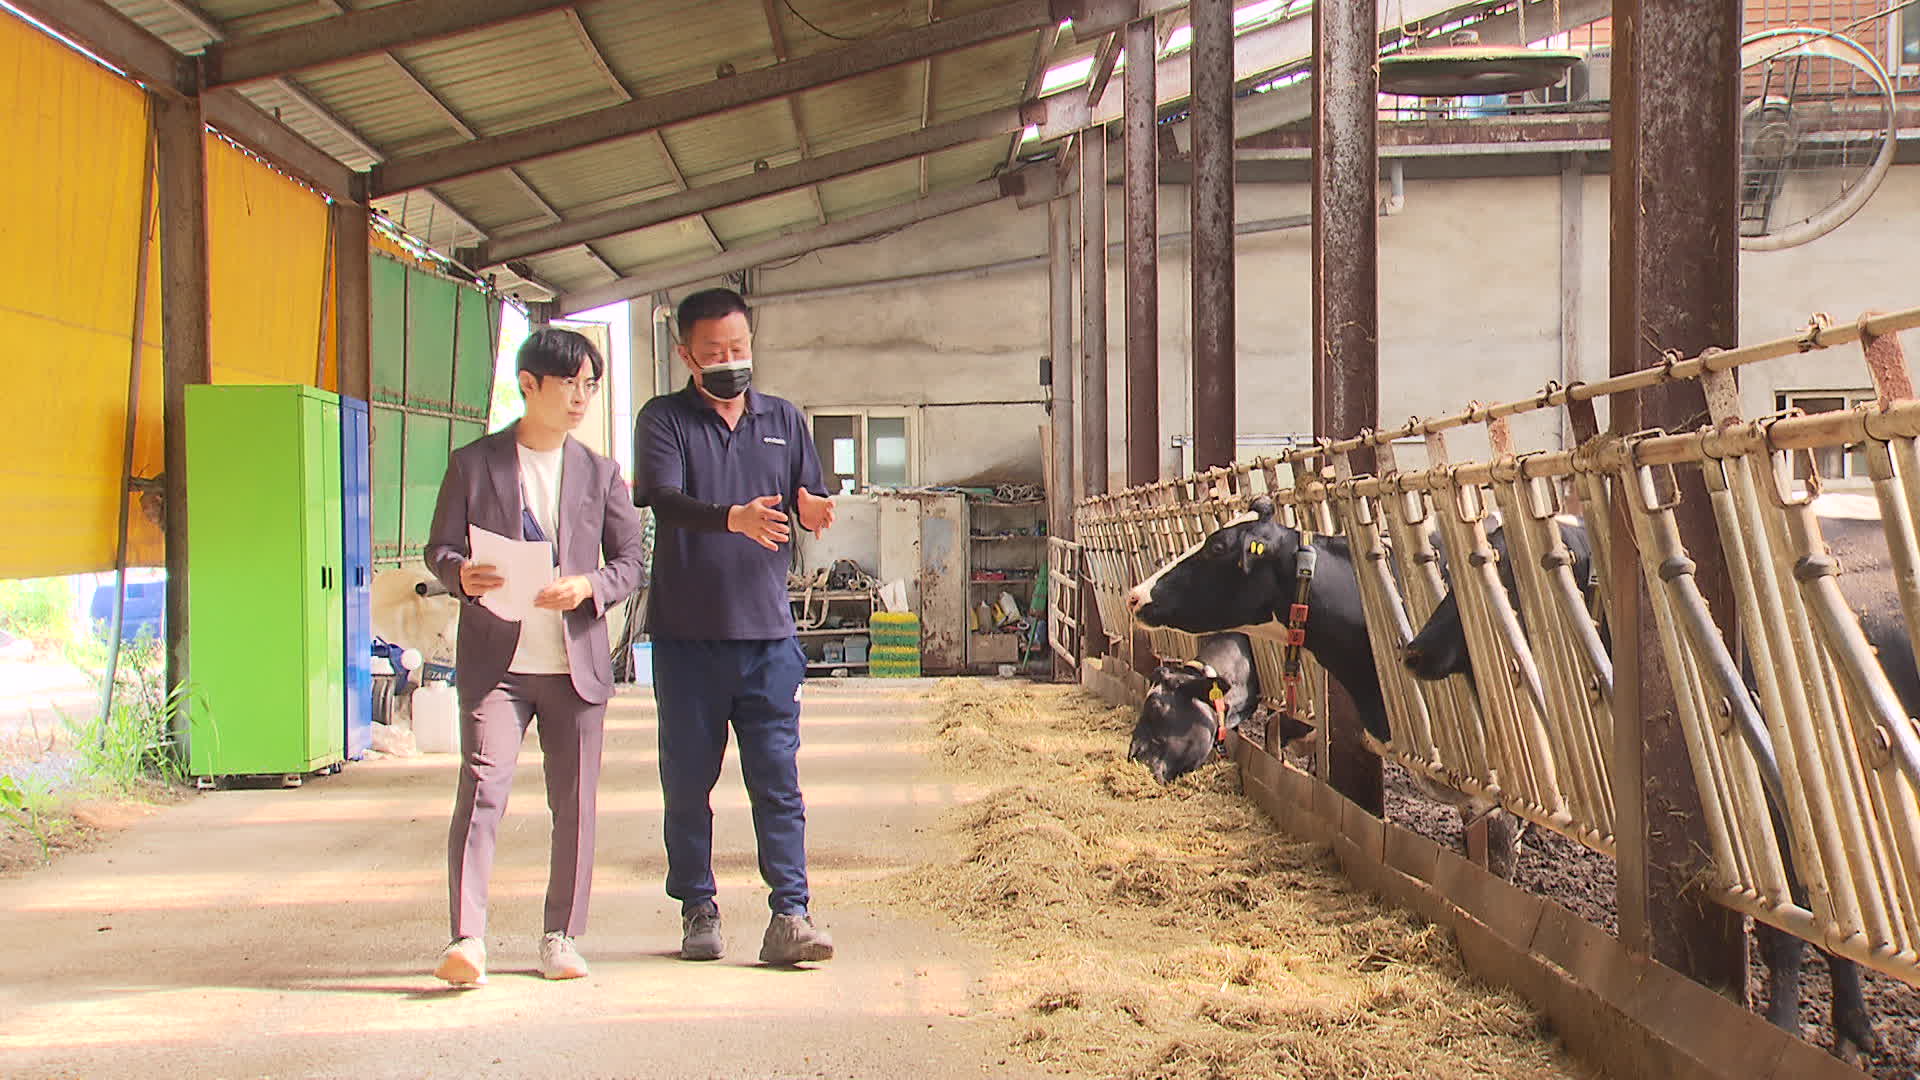 경기도 이천의 젖소농장에서 기자(왼쪽)가 주인으로부터 사료에 관한 설명을 듣고 있다. [촬영기자 조은경]